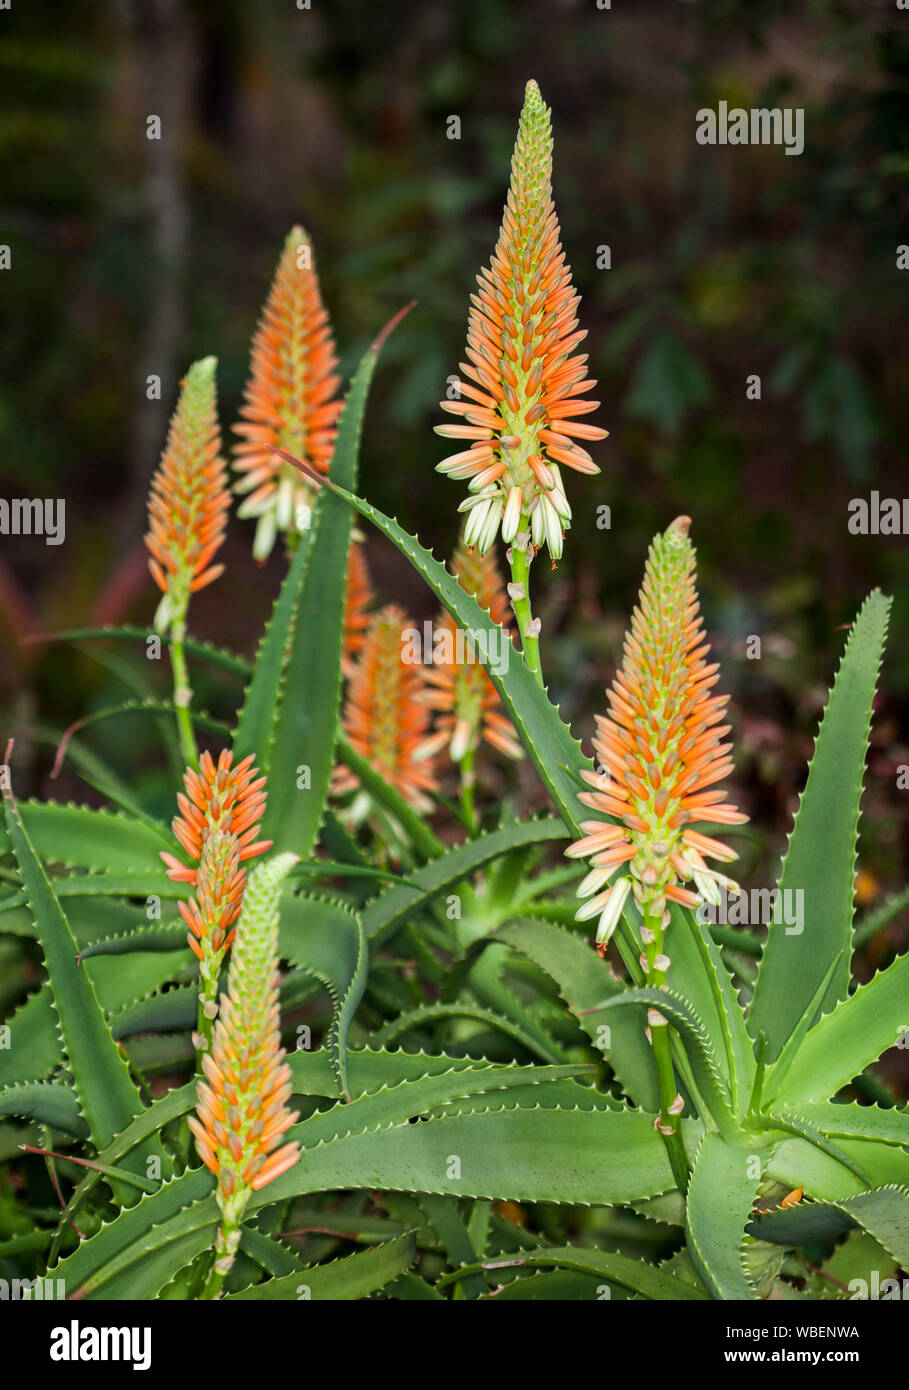 Plante succulente tolérant la sécheresse, l'Aloe 'Venus', avec des épis de fleurs crème orange et vert lumineux passant de feuilles épineuses Banque D'Images